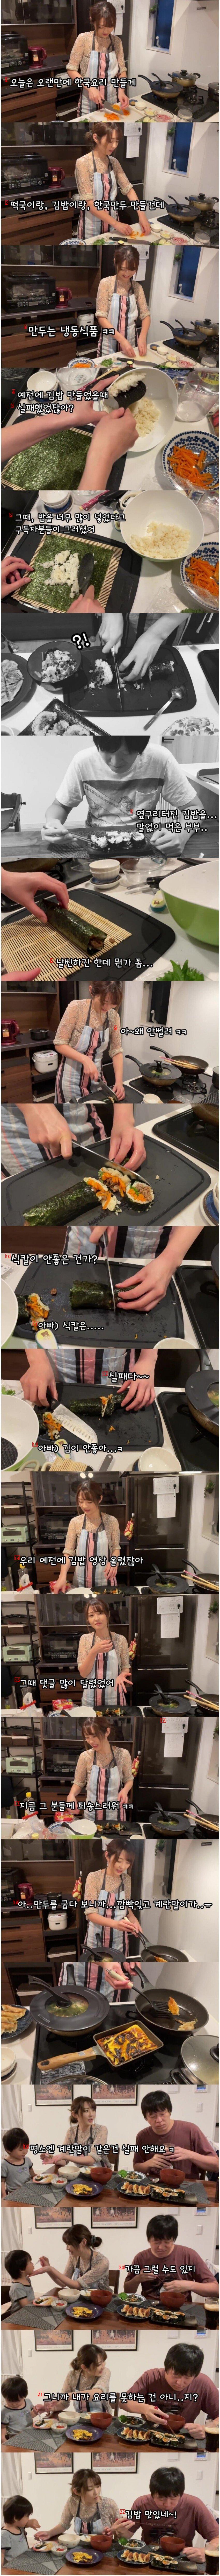 料理ができない日本人妻